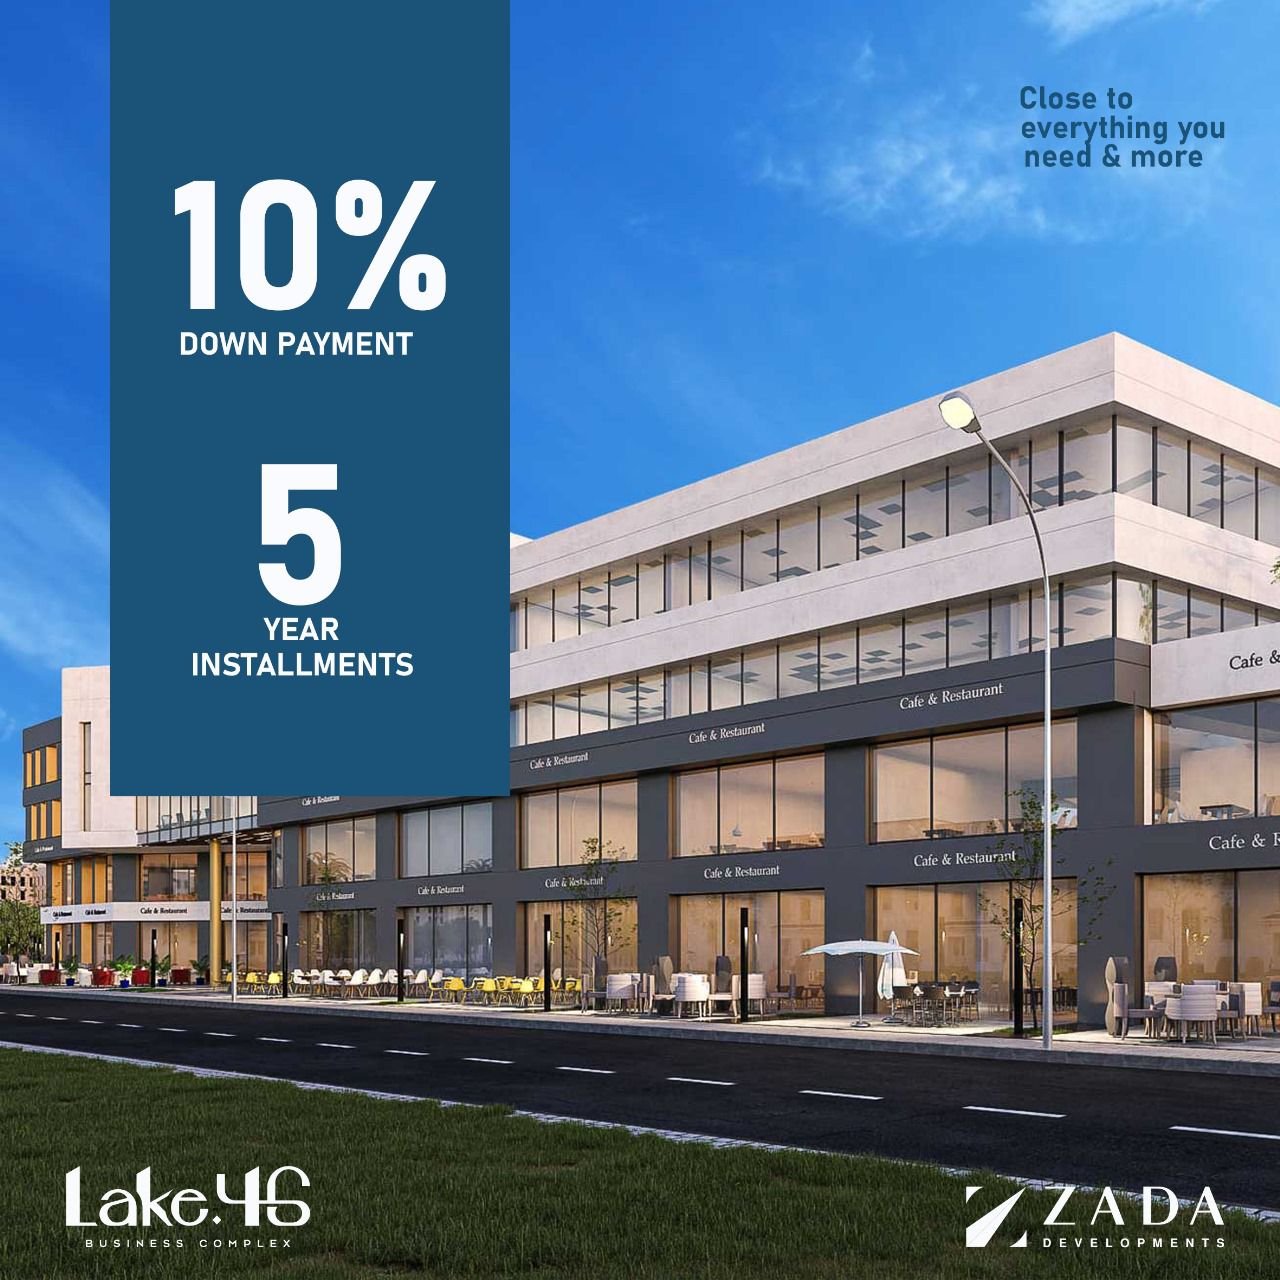 عيادة للبيع بالتقسيط في مدينة 6 أكتوبر مساحة 48 متر بمقدم 25% وتقسيط يصل الي 5 سنوات في مول LAKE 46 Mall | THE PEAK PROPERTIES